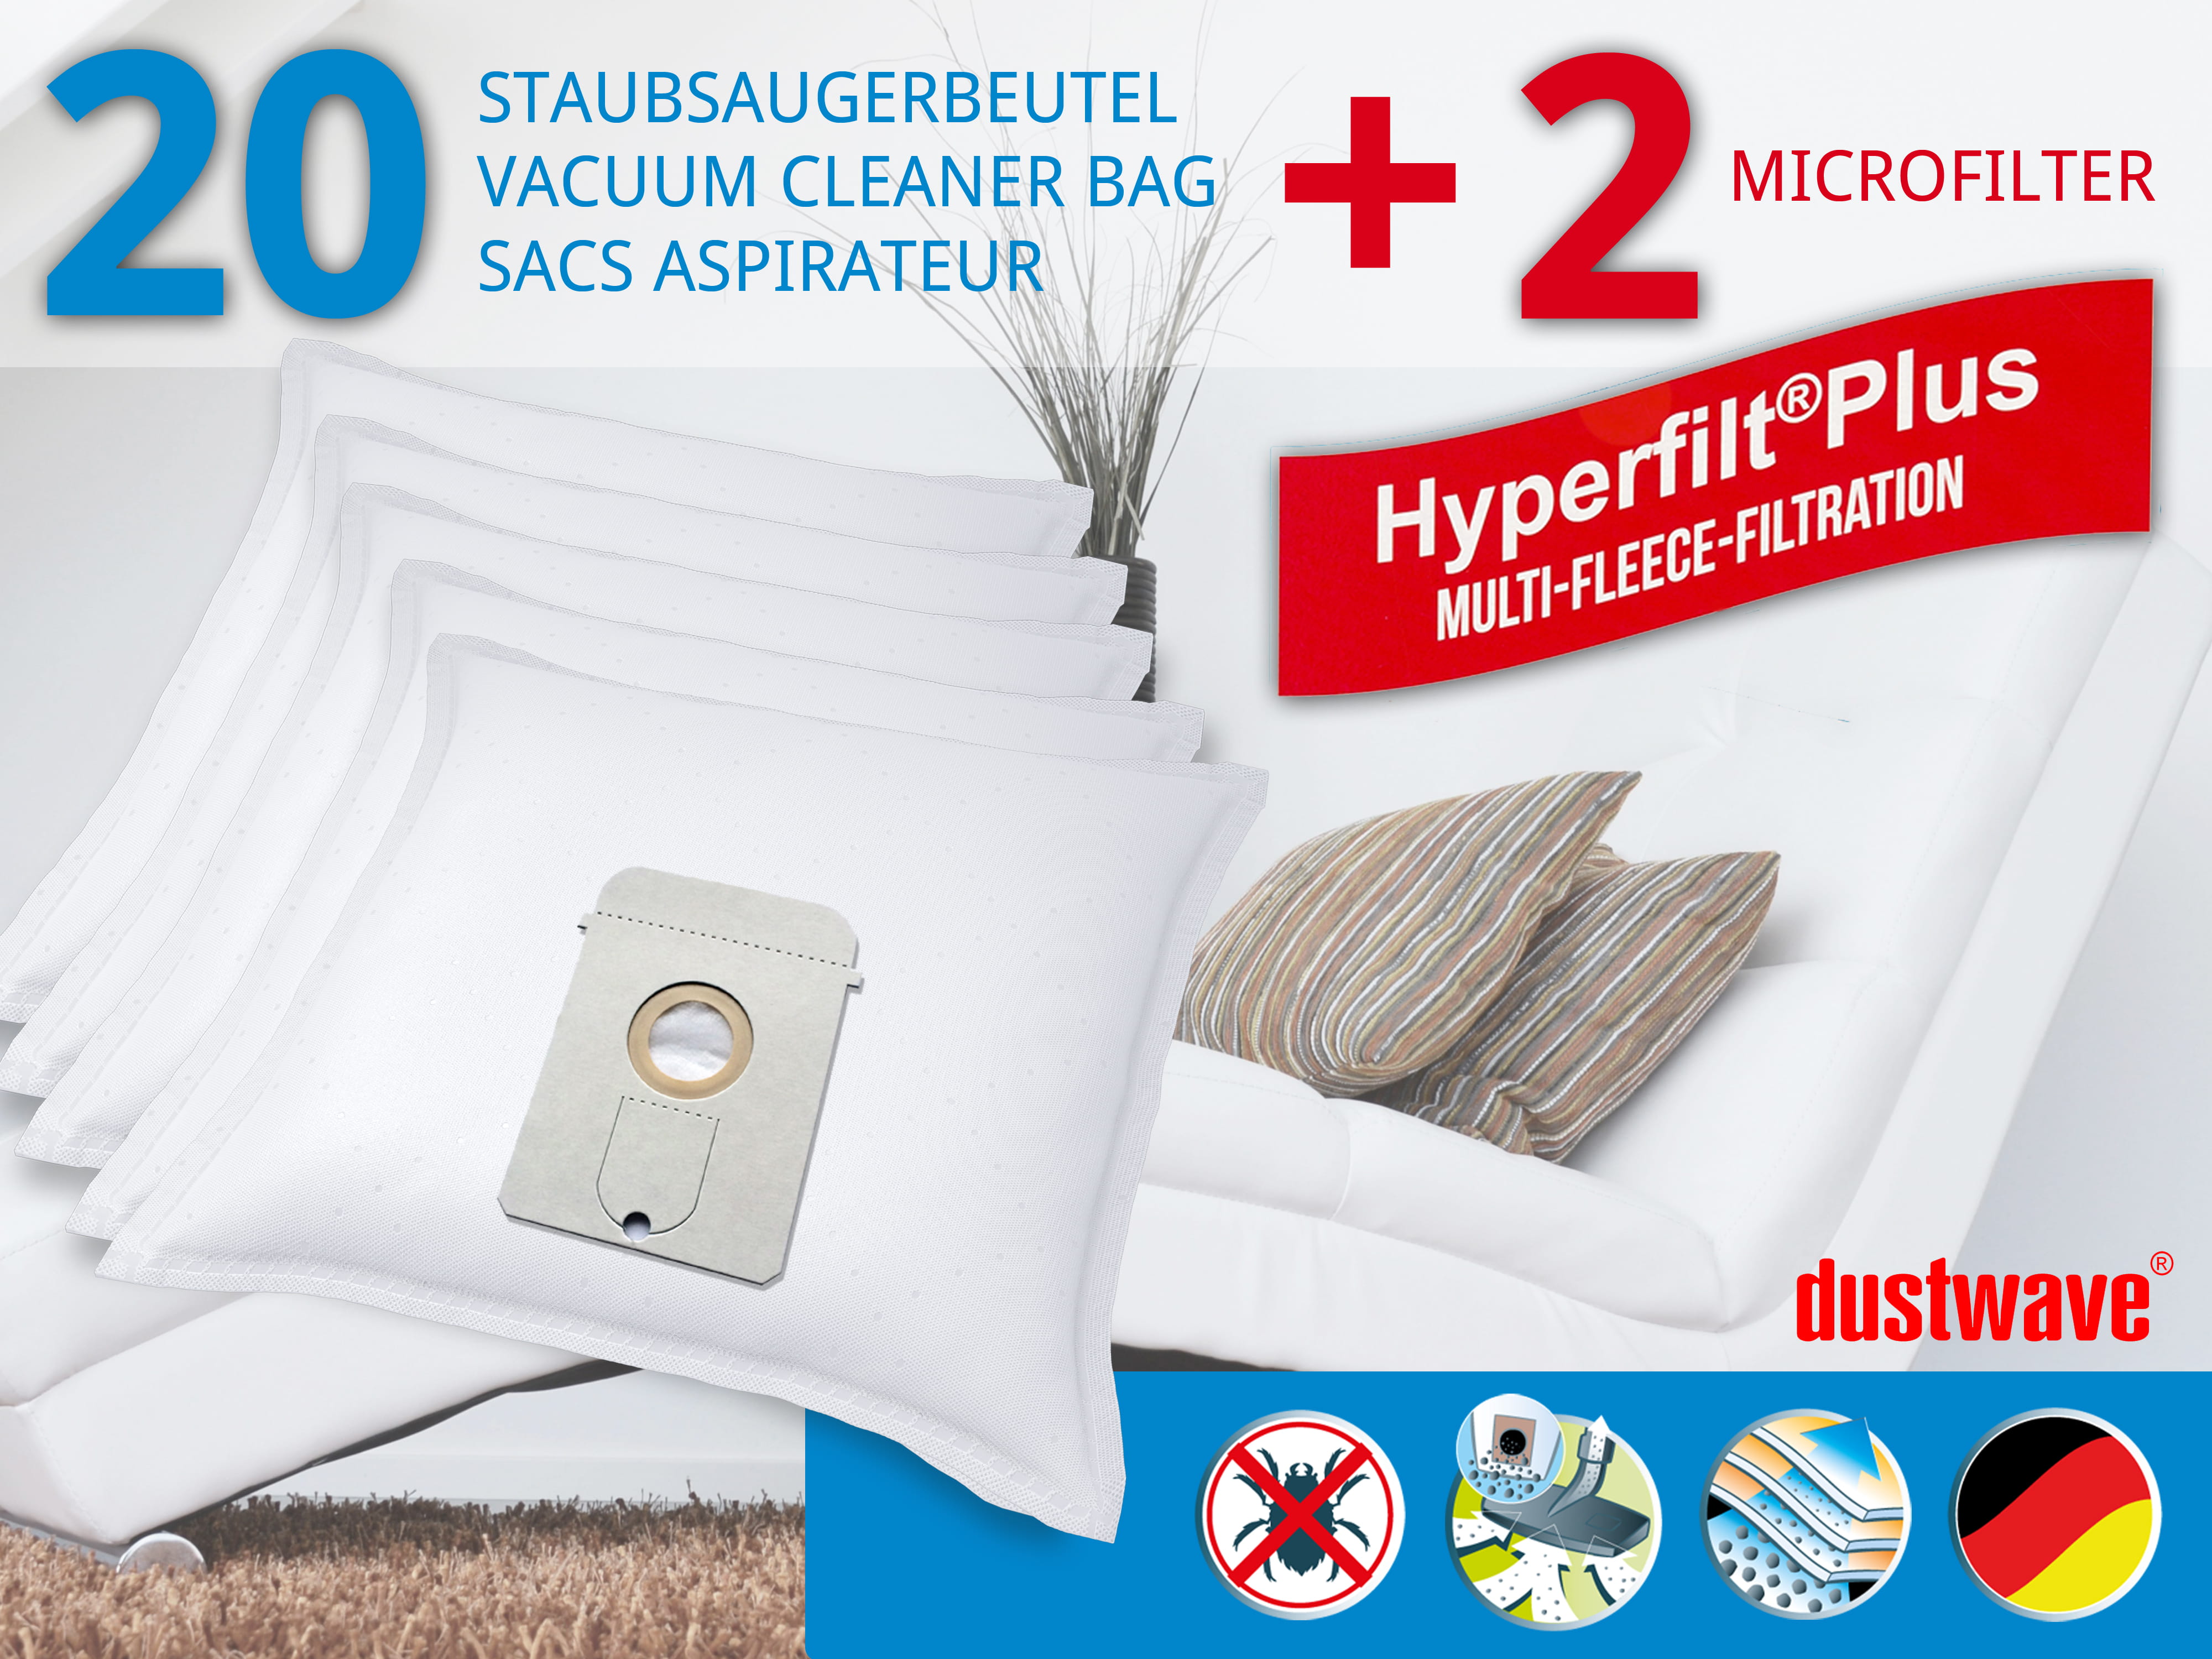 Dustwave® 20 Staubsaugerbeutel für AEG Vampyr 831 i - hocheffizient, mehrlagiges Mikrovlies mit Hygieneverschluss - Made in Germany